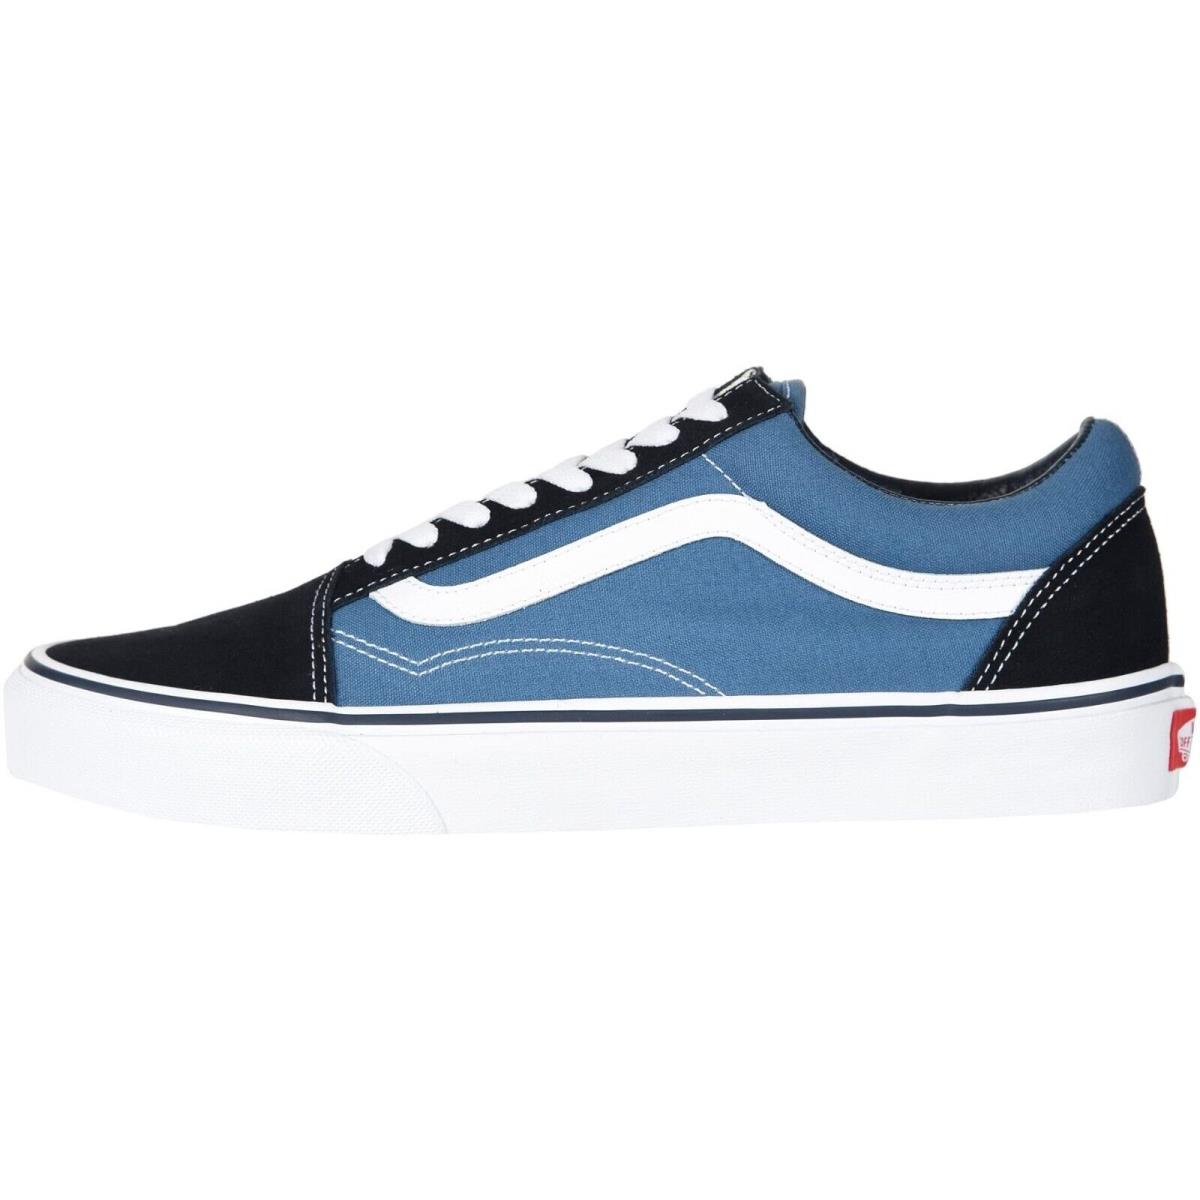 Vans Old Skool Unisex Suede Sneakers Mens Womens Skateboard Canvas Shoes Navy/True White